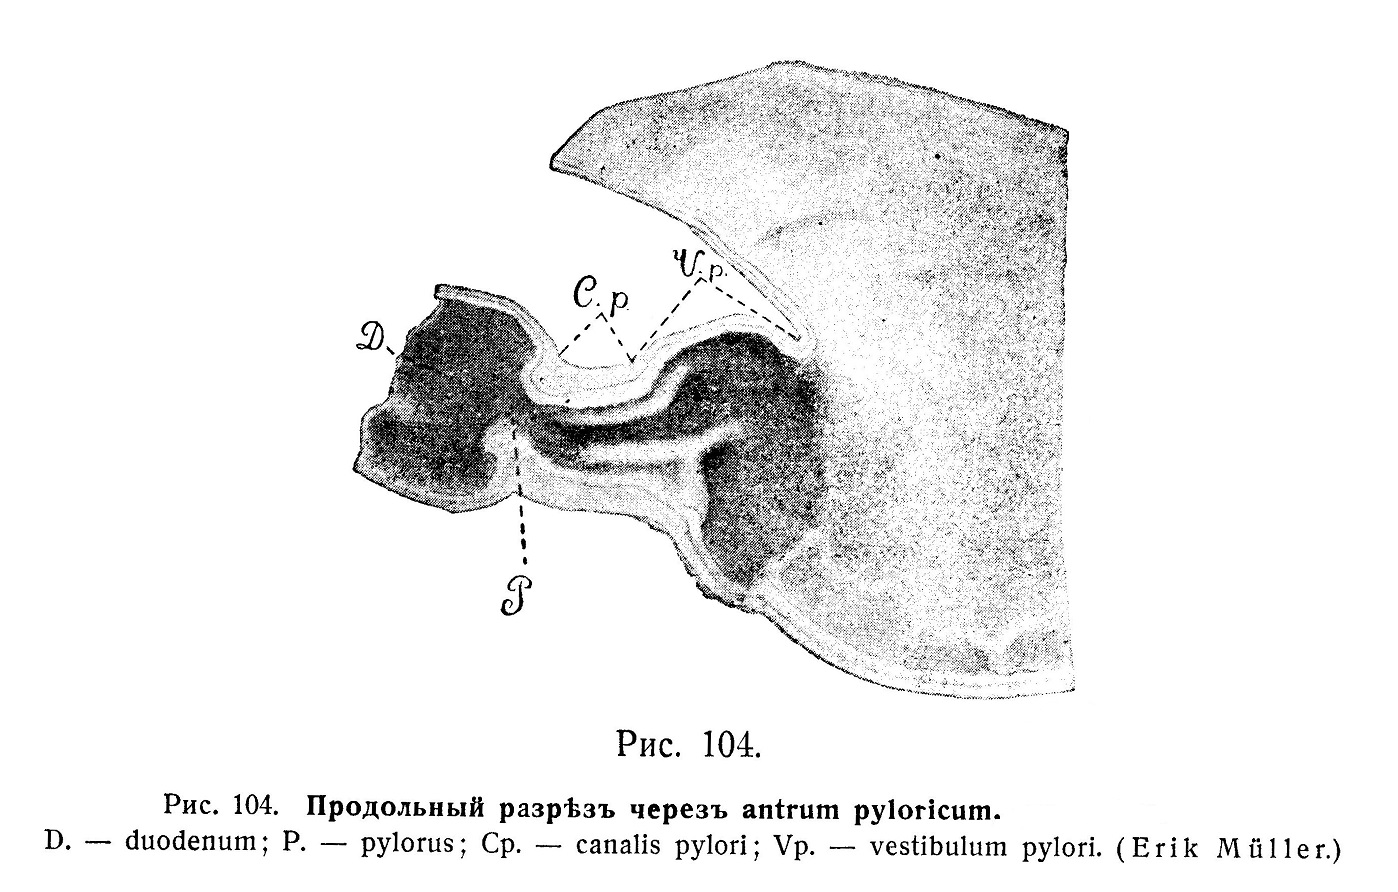 Продольный разрез через antrum pyloricum